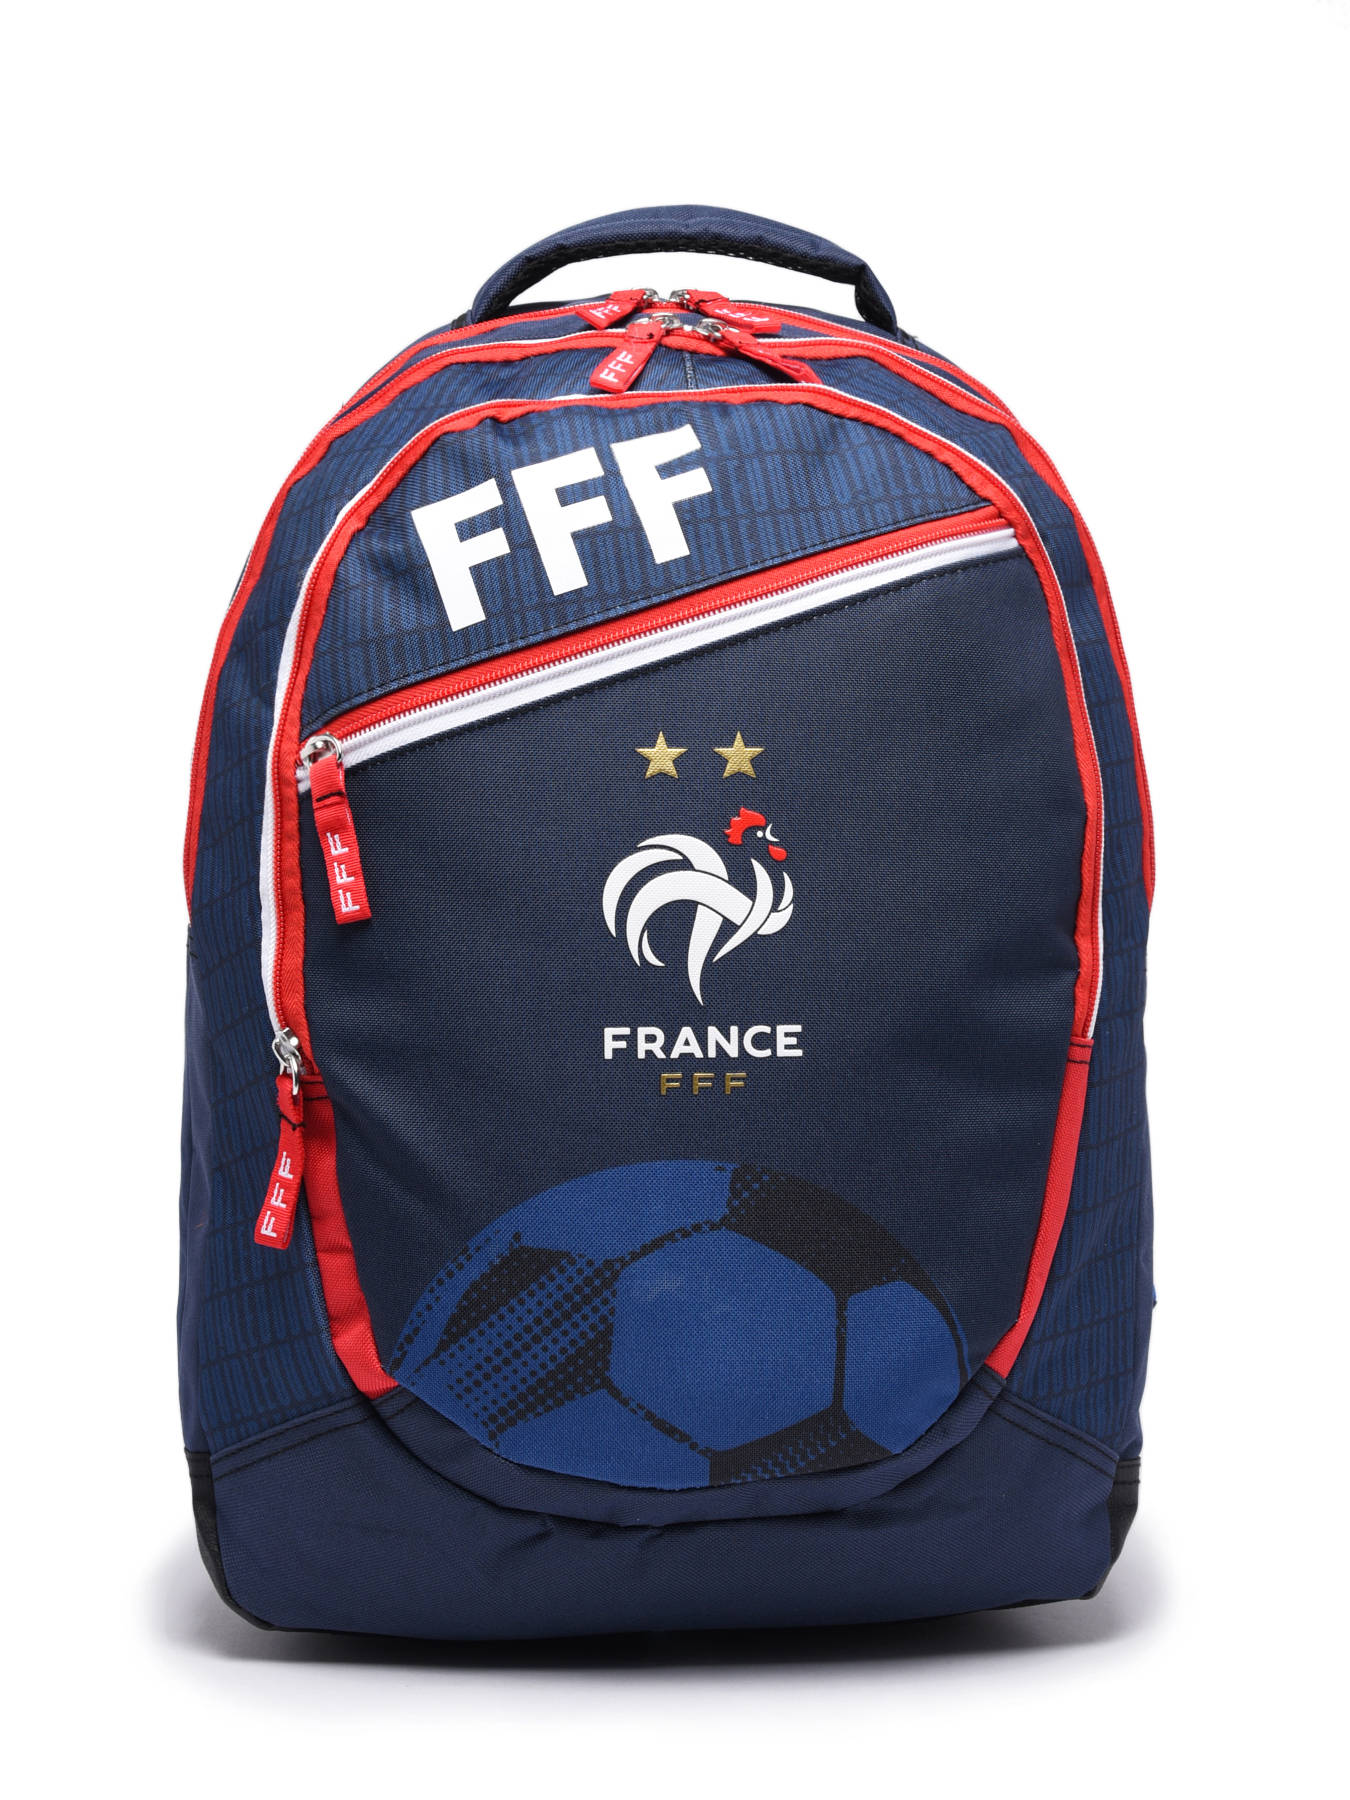 Sac à dos Federat. France Football Fff 23CFFF204B3P sur